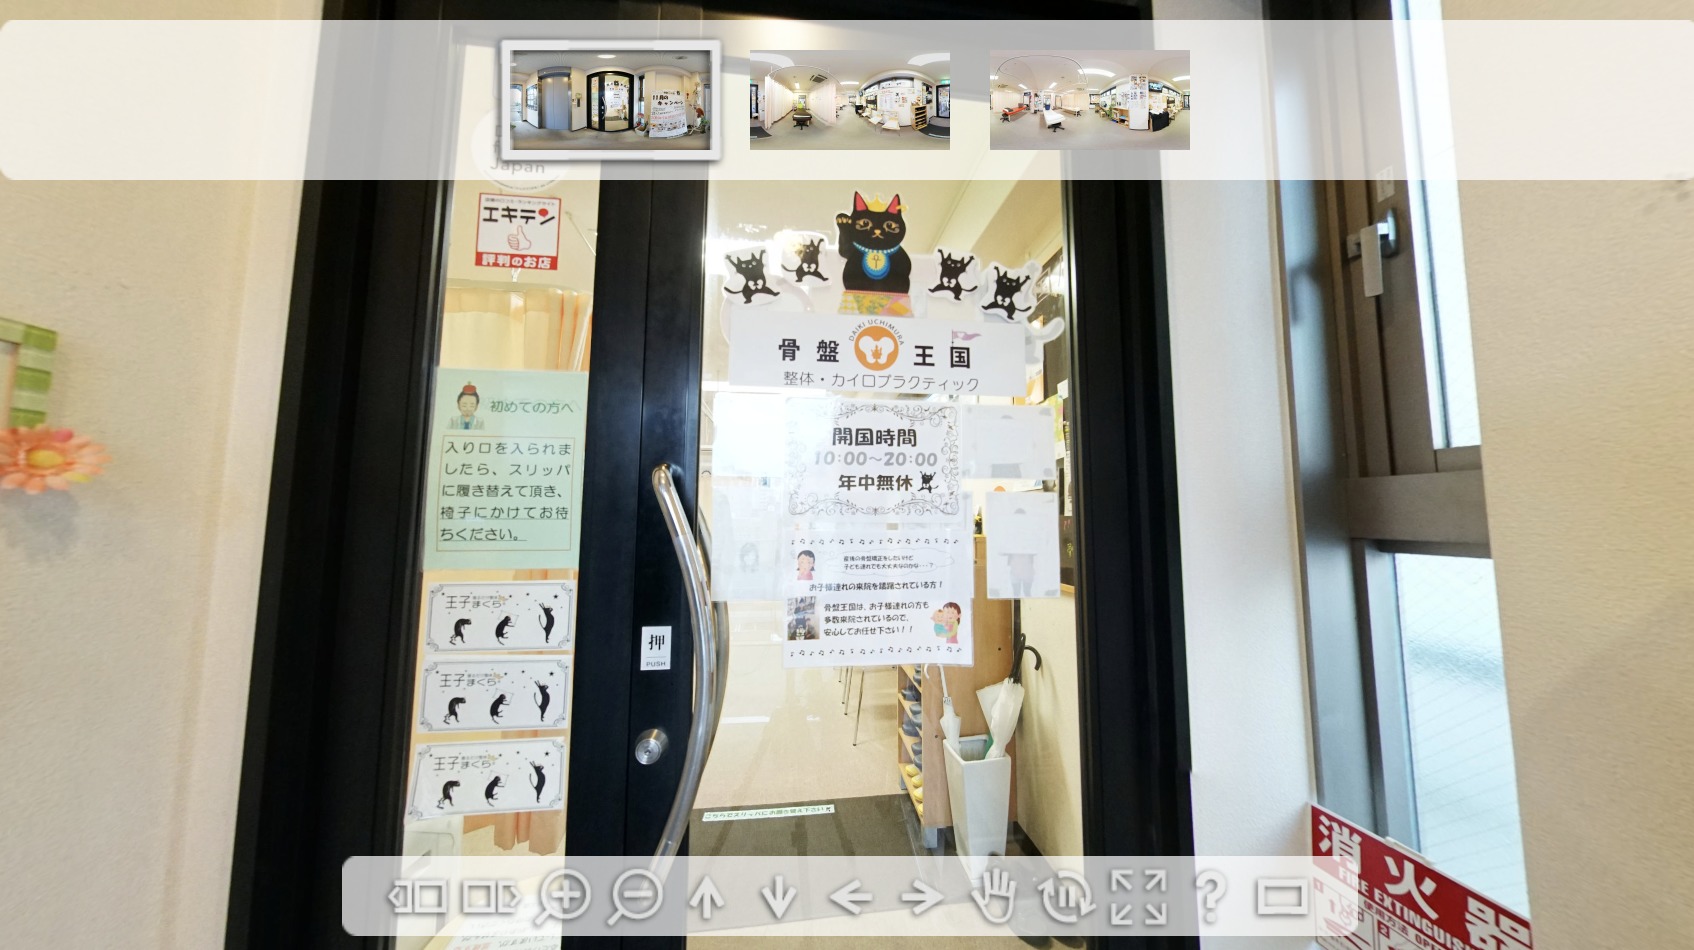 【火鍋『KANKA』新宿店 様 飲食店】360°パノラマ撮影・制作実績詳細ページ